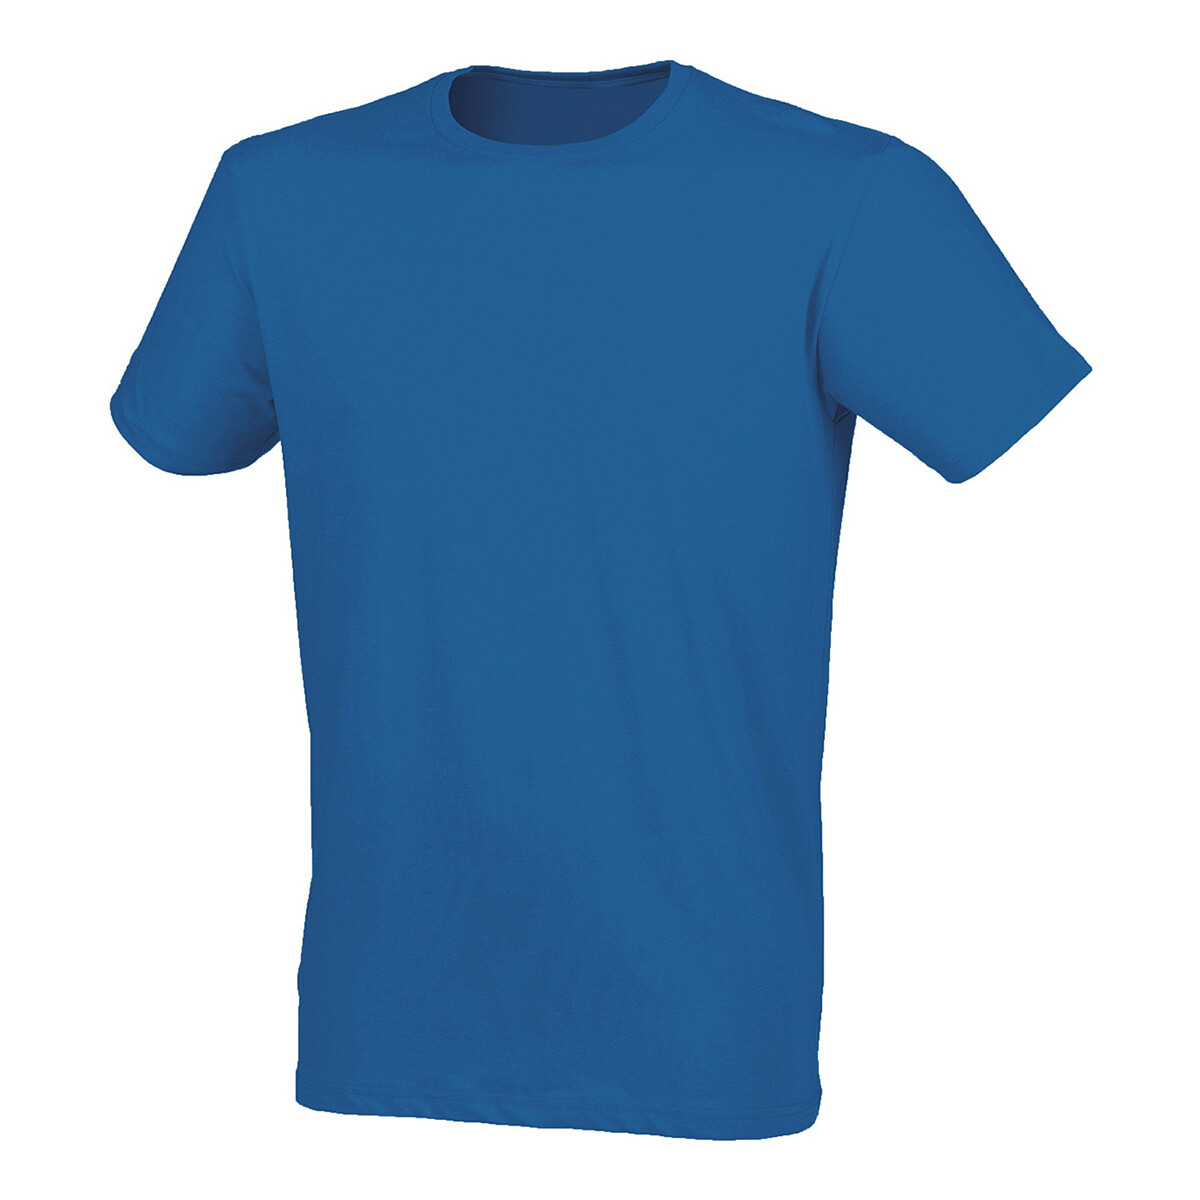 Abbigliamento Uomo T-shirt maniche corte Skinni Fit SF121 Blu